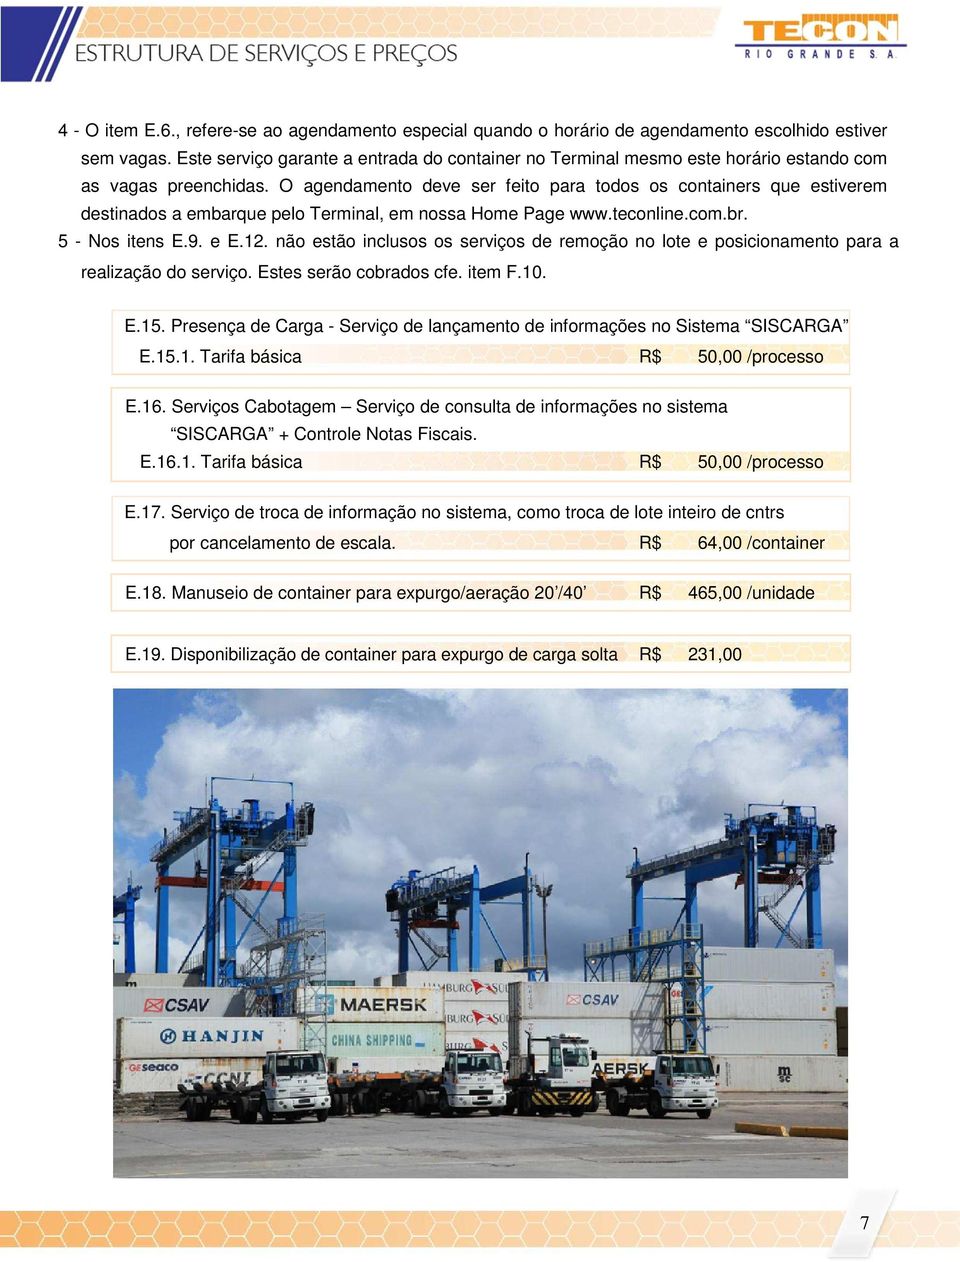 O agendamento deve ser feito para todos os containers que estiverem destinados a embarque pelo Terminal, em nossa Home Page www.teconline.com.br. 5 - Nos itens E.9. e E.12.